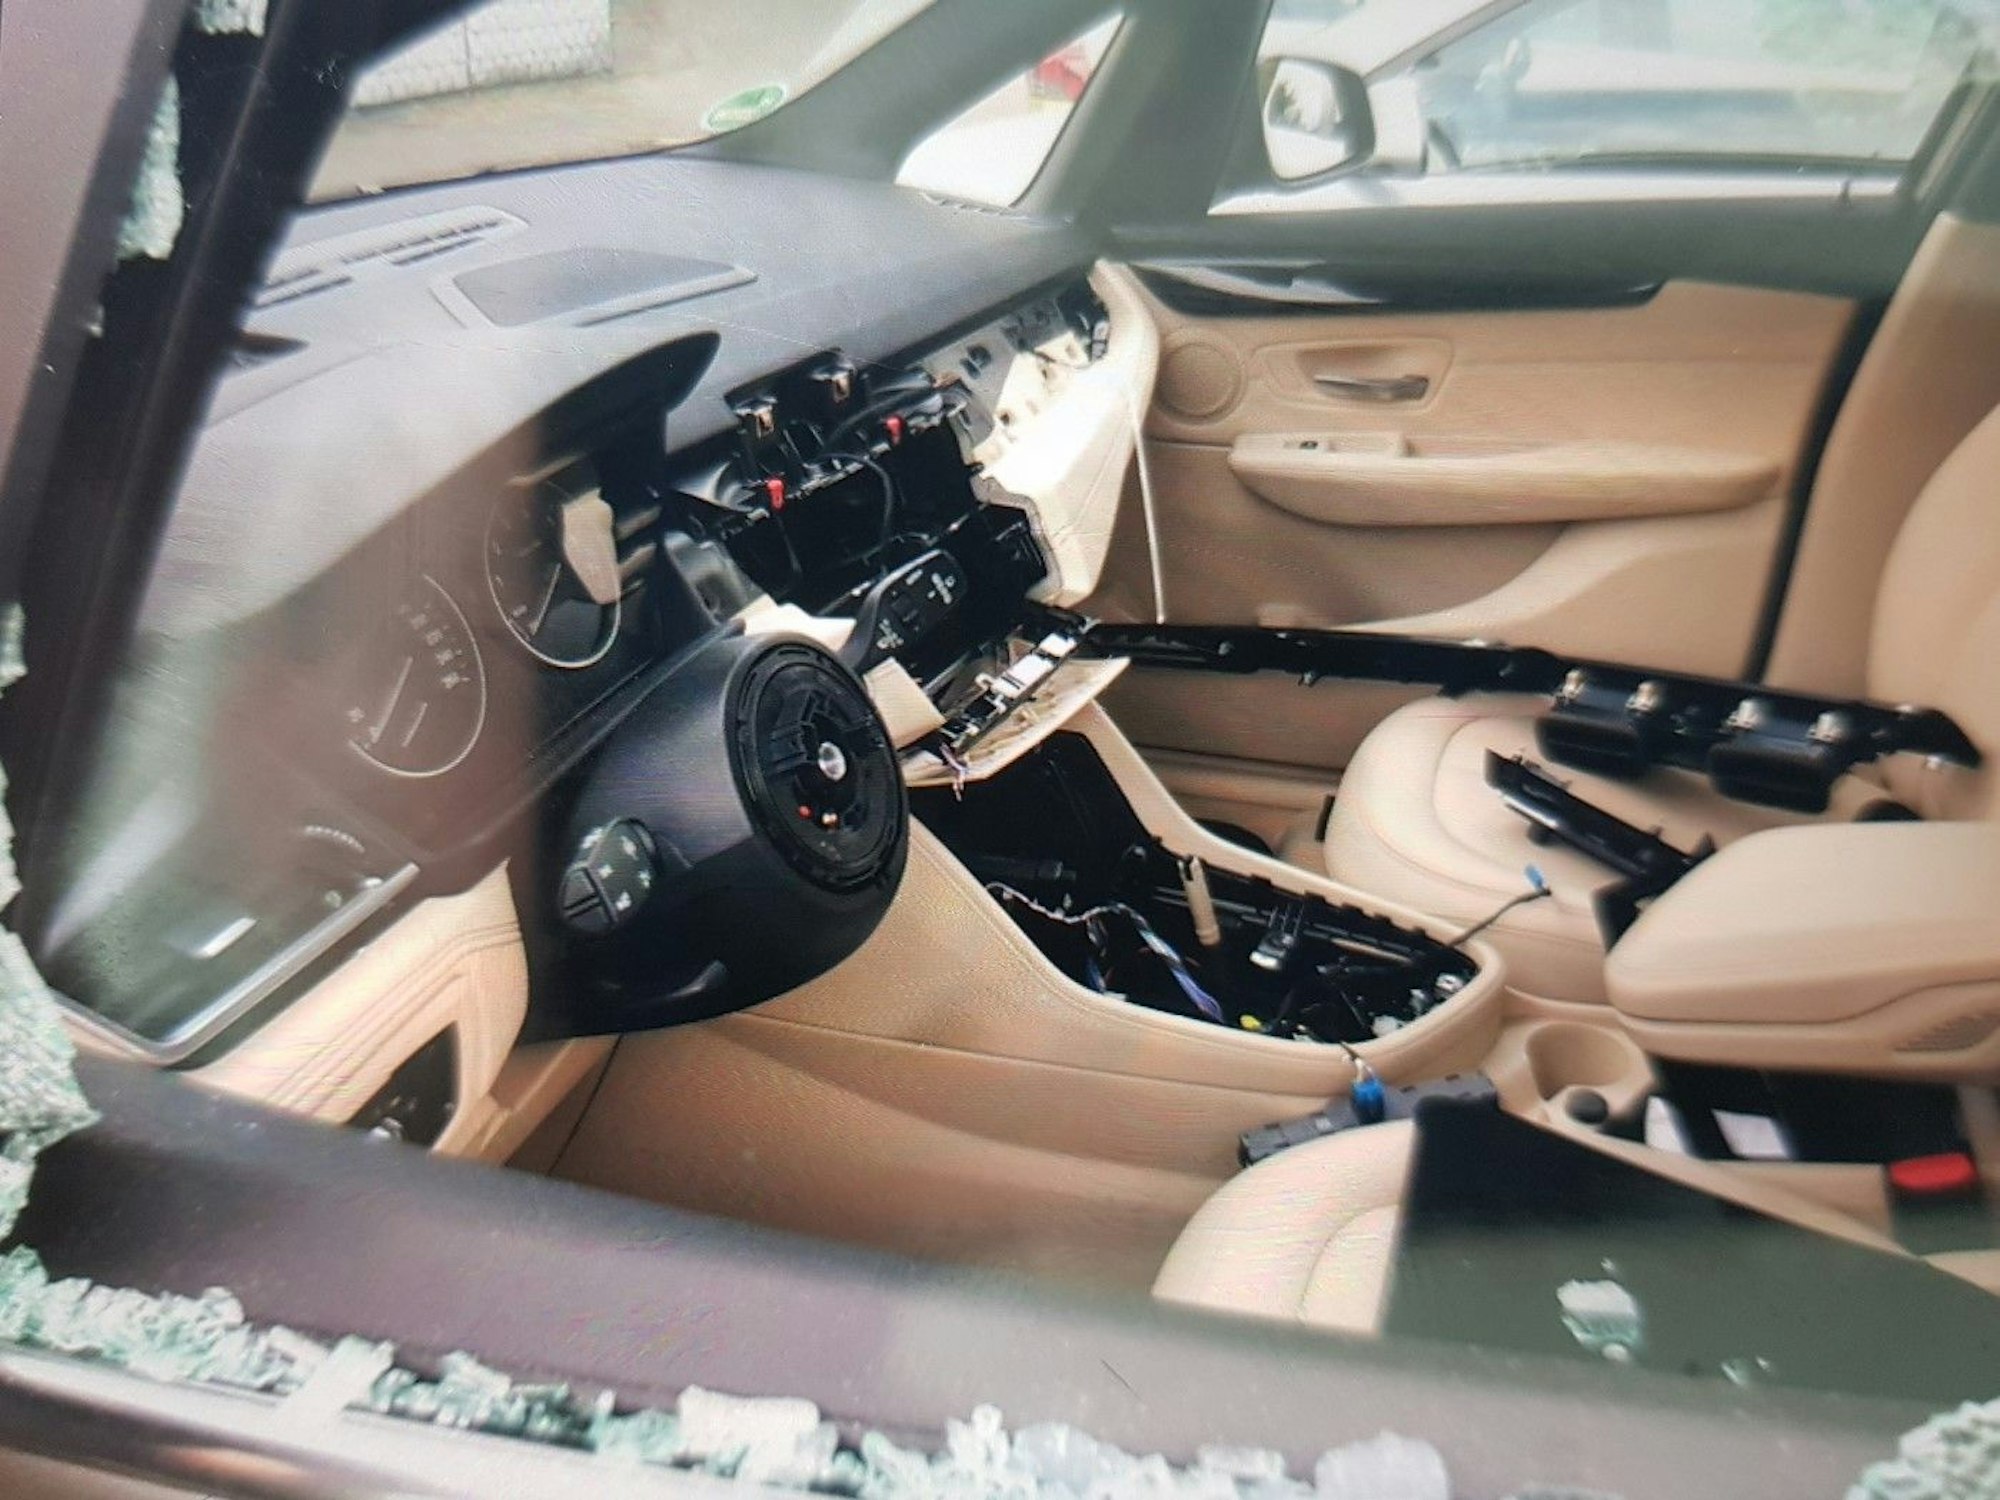 Blick in einen BMW - Navi, Klimaanlage und Lenkrad wurden gestohlen.